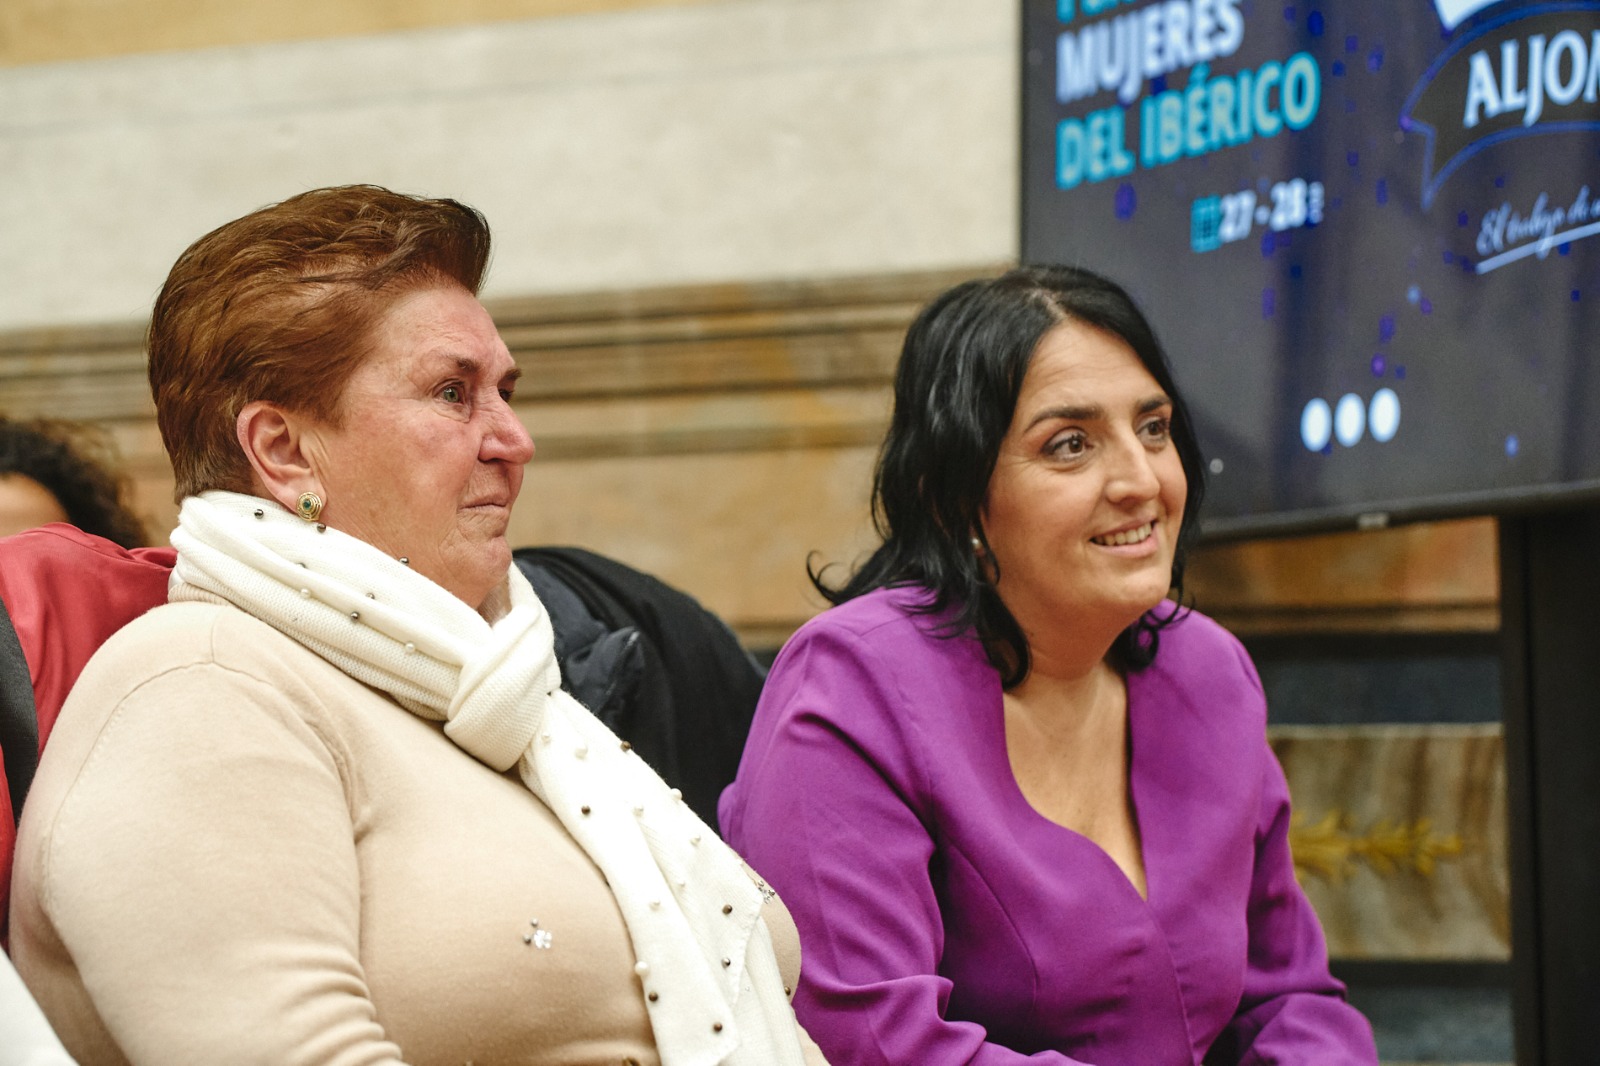 Encuentro mujeres en el iberico